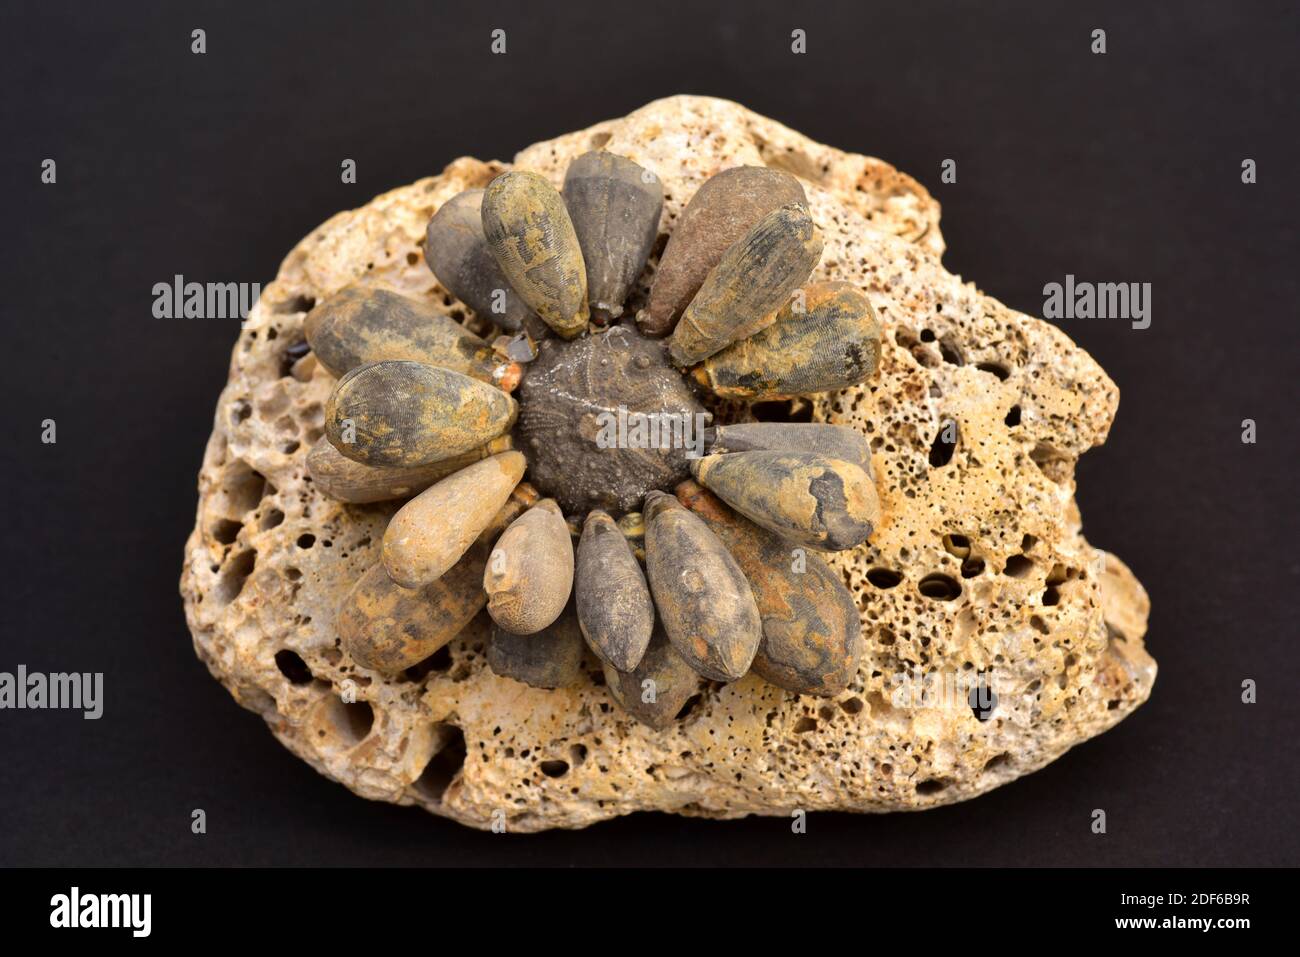 Fósil reconstituido de Hemicidaris sp. Equinoide que vivió parte del Jurásico y Cretácico. Foto de stock